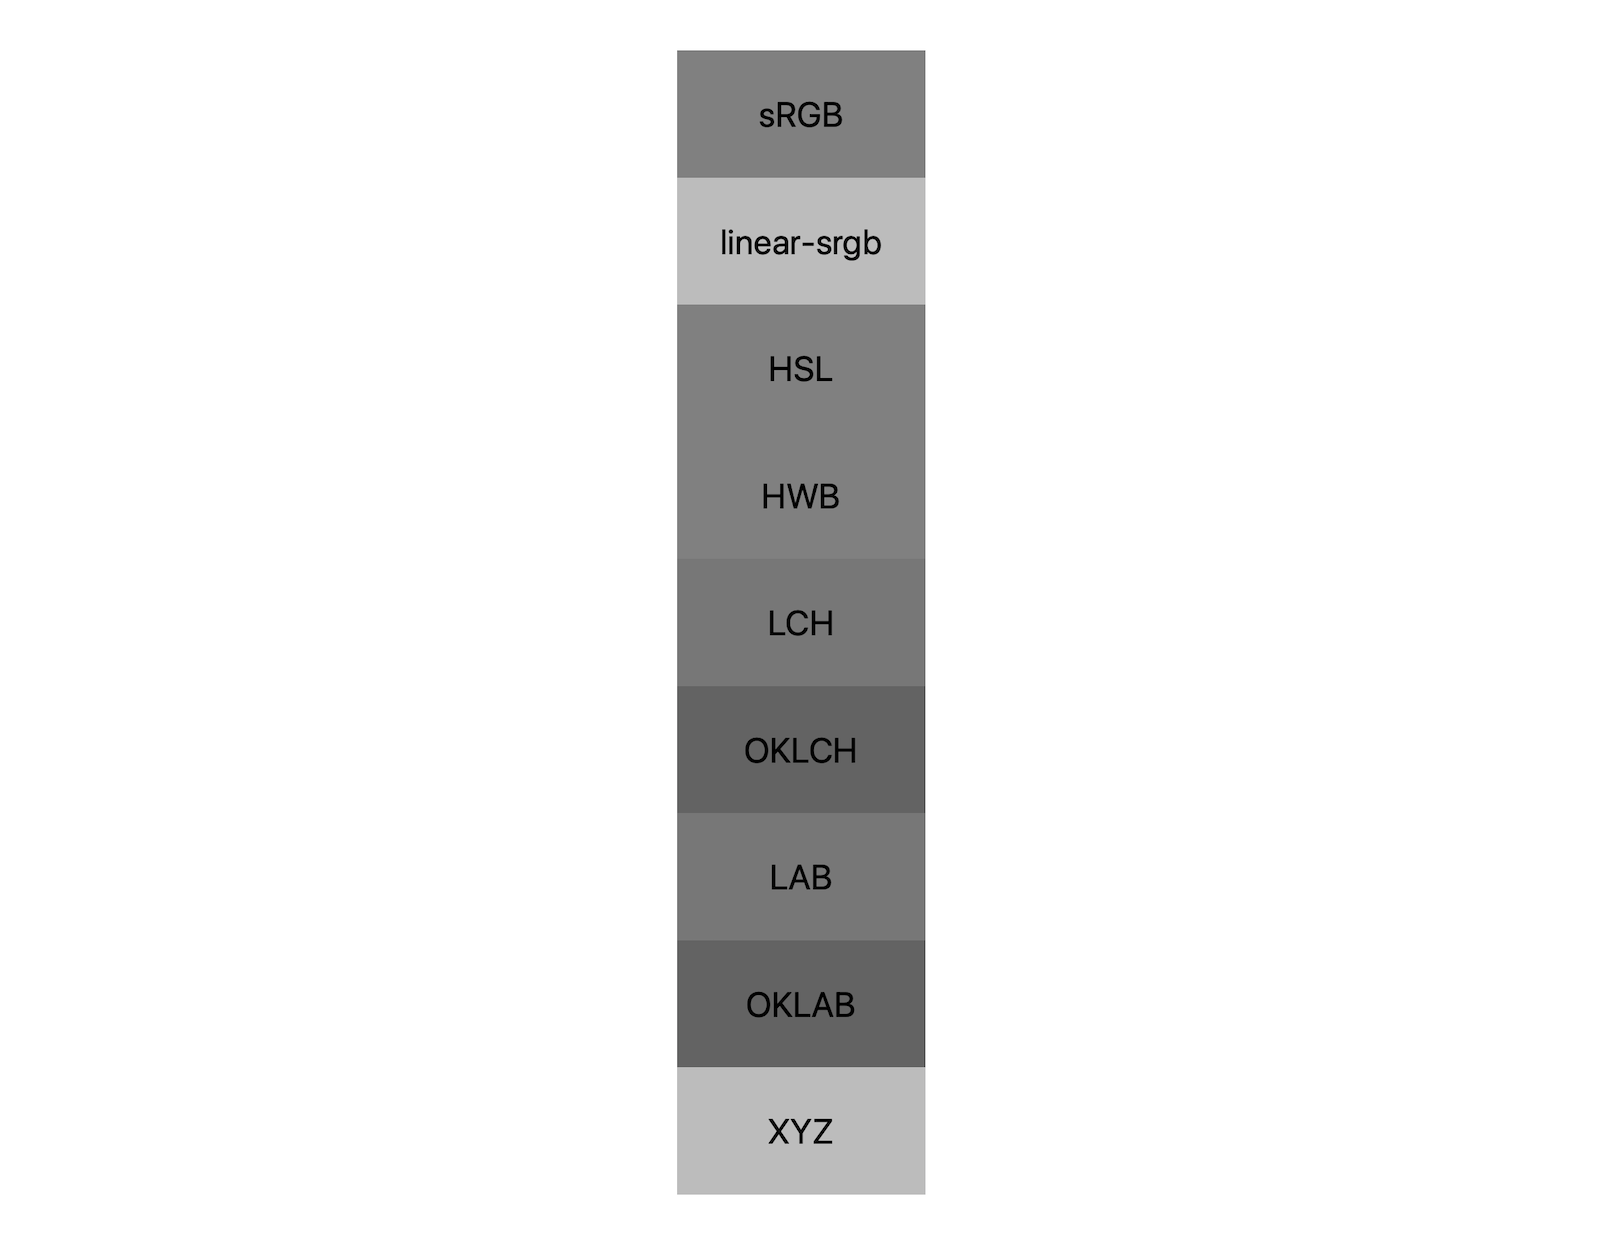 Los 7 espacios de color (srgb, linear-srgb, lch, oklch, lab, oklab y xyz) muestran los resultados de la combinación de blanco y negro. Se muestran aproximadamente 5 tonos diferentes, lo que demuestra que cada espacio de color se mezclará incluso con un gris de manera diferente.